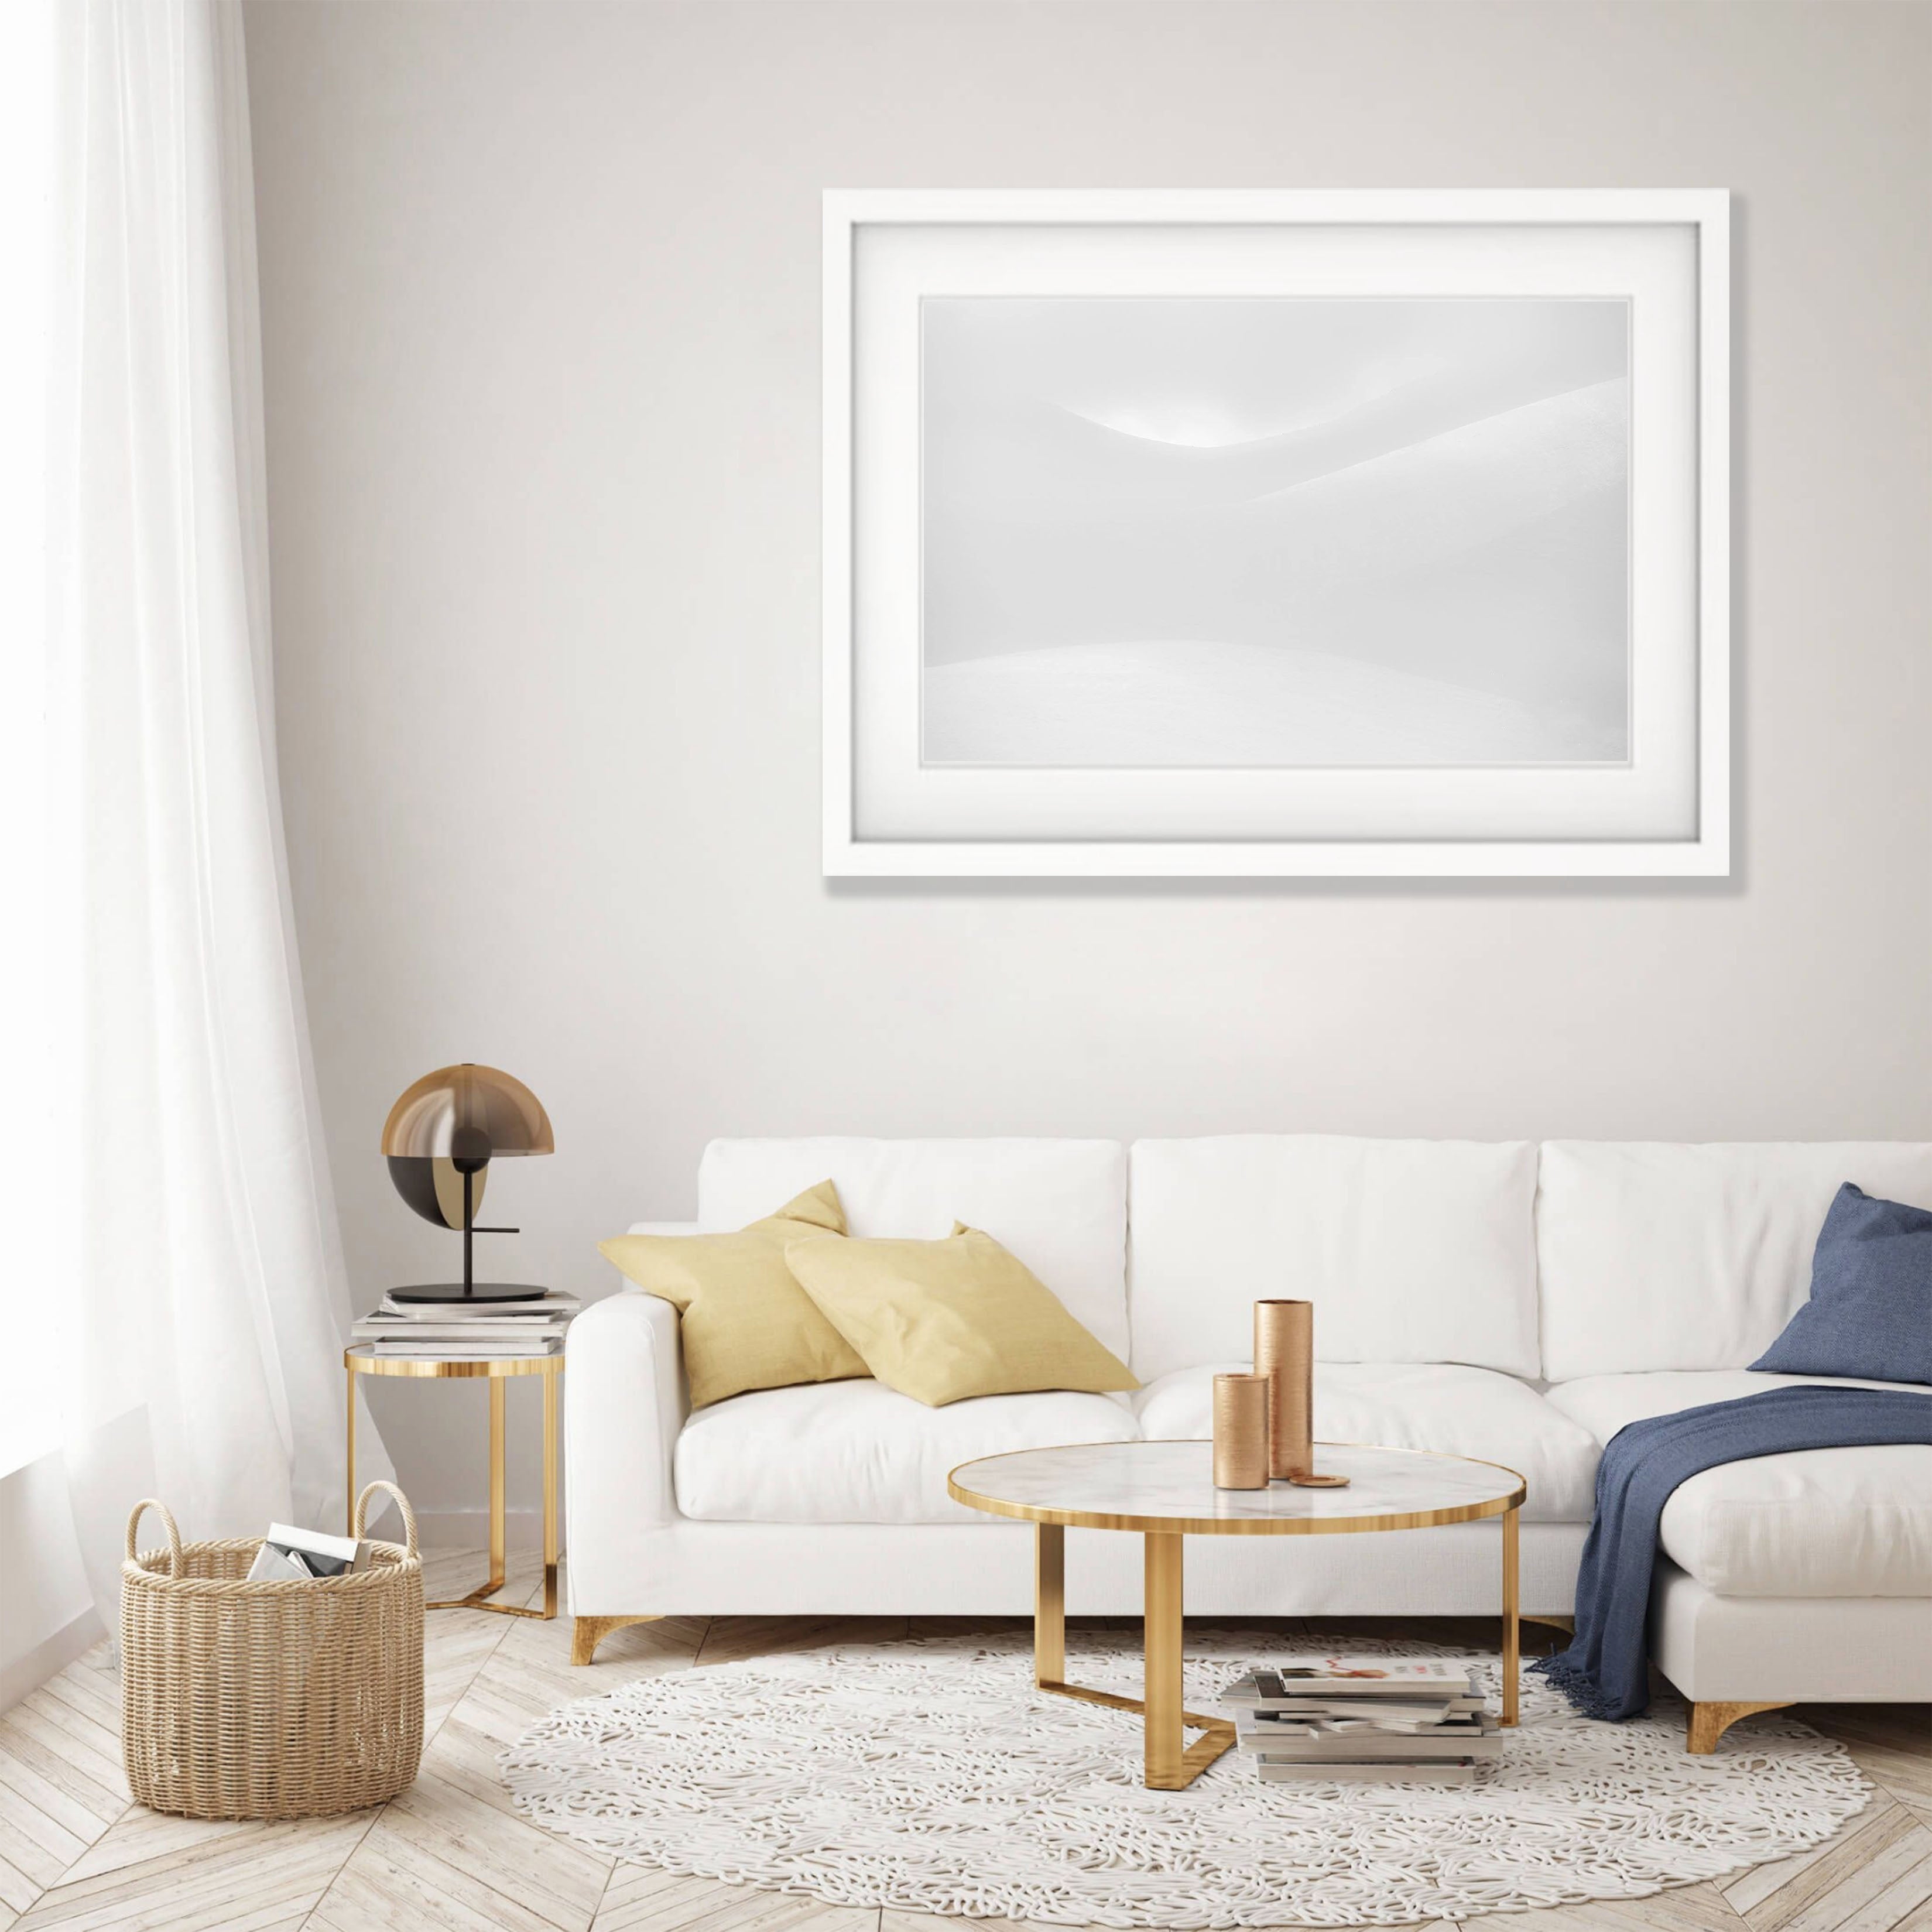 ARTWORK INSTOCK - Curves - 100 x 66cms Canvas White Framed Print